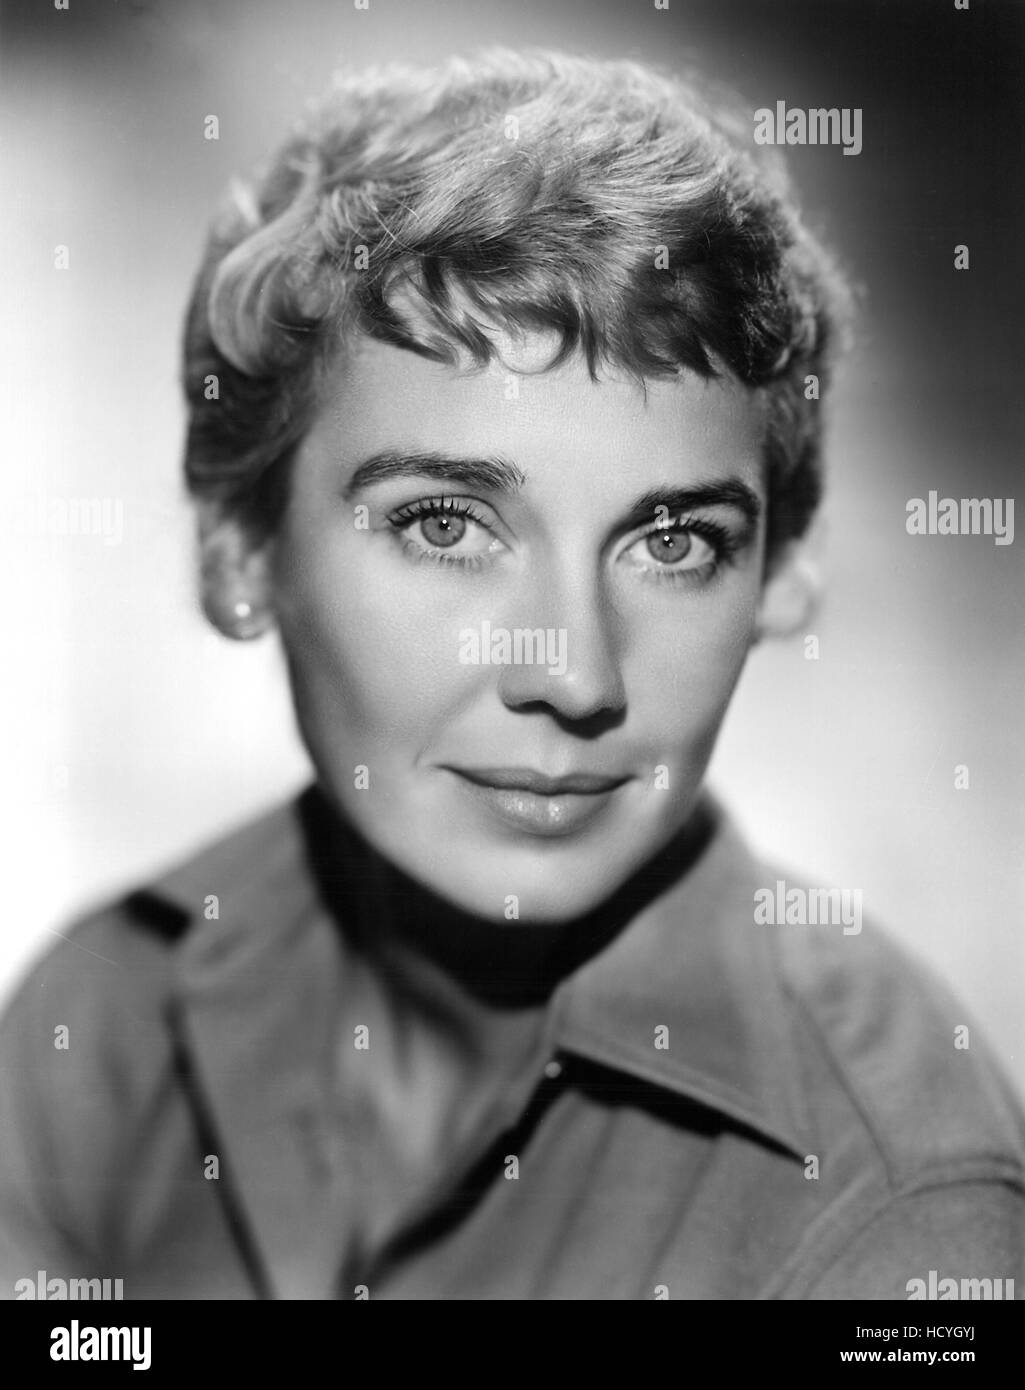 Betsy Drake, 1950s Stock Photo - Alamy